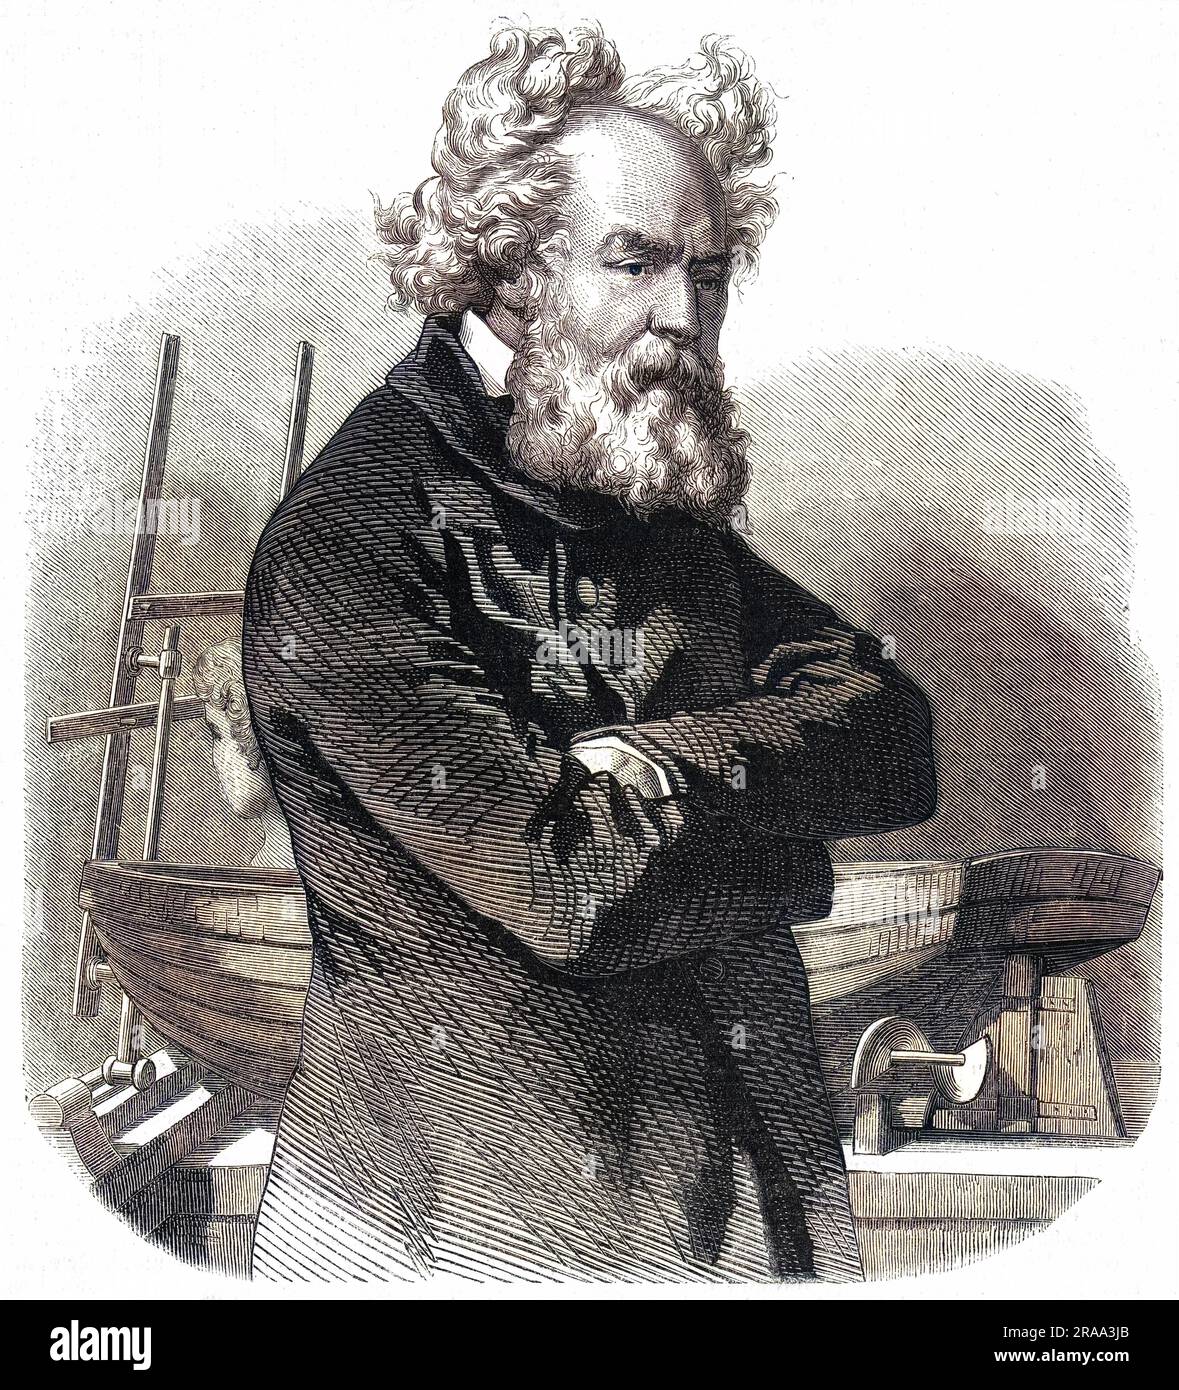 FREDERIC SAUVAGE Ingénieur mécanique français connu pour son travail sur l'hélice marine. Date: 1785 - 1857 Banque D'Images